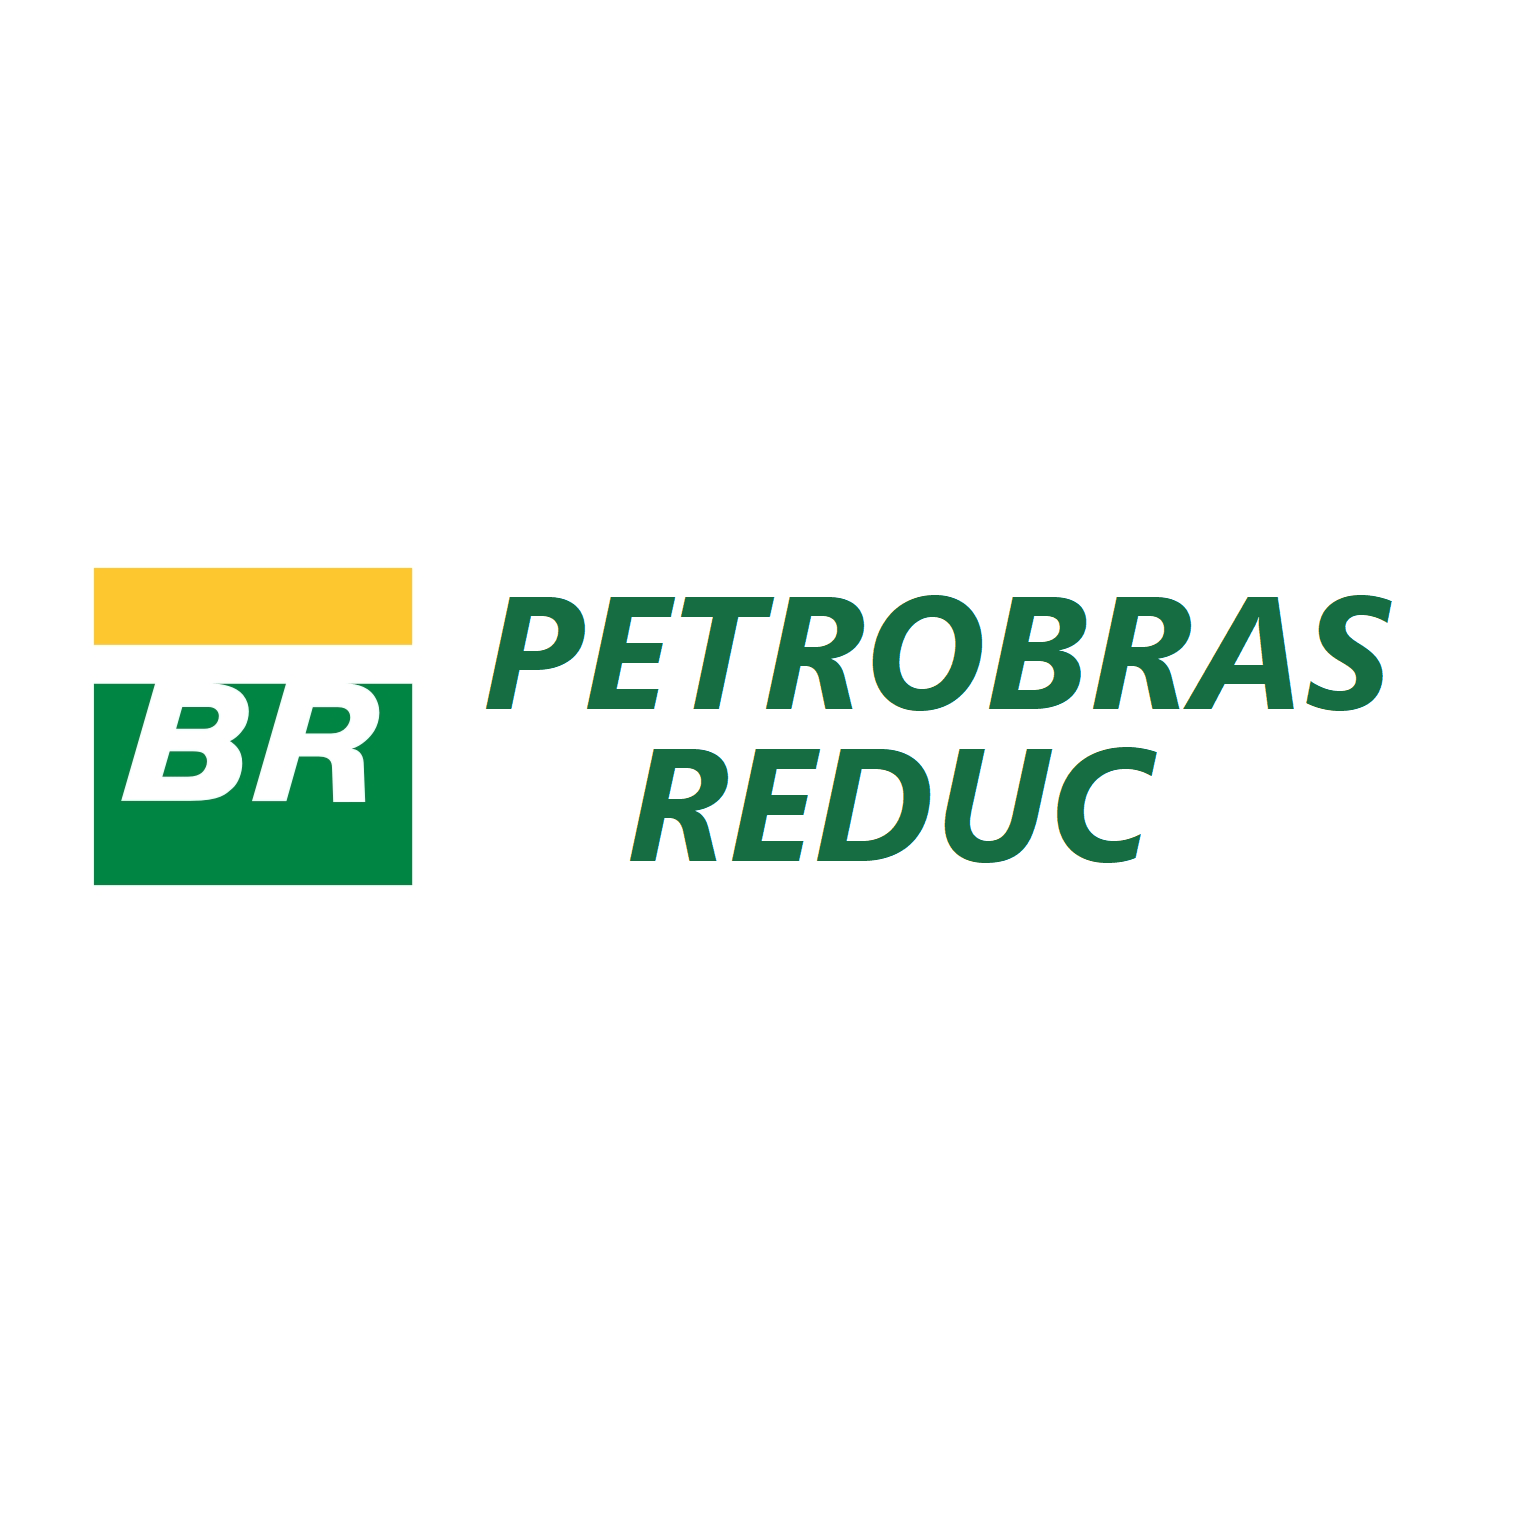 Petrobras Reduc